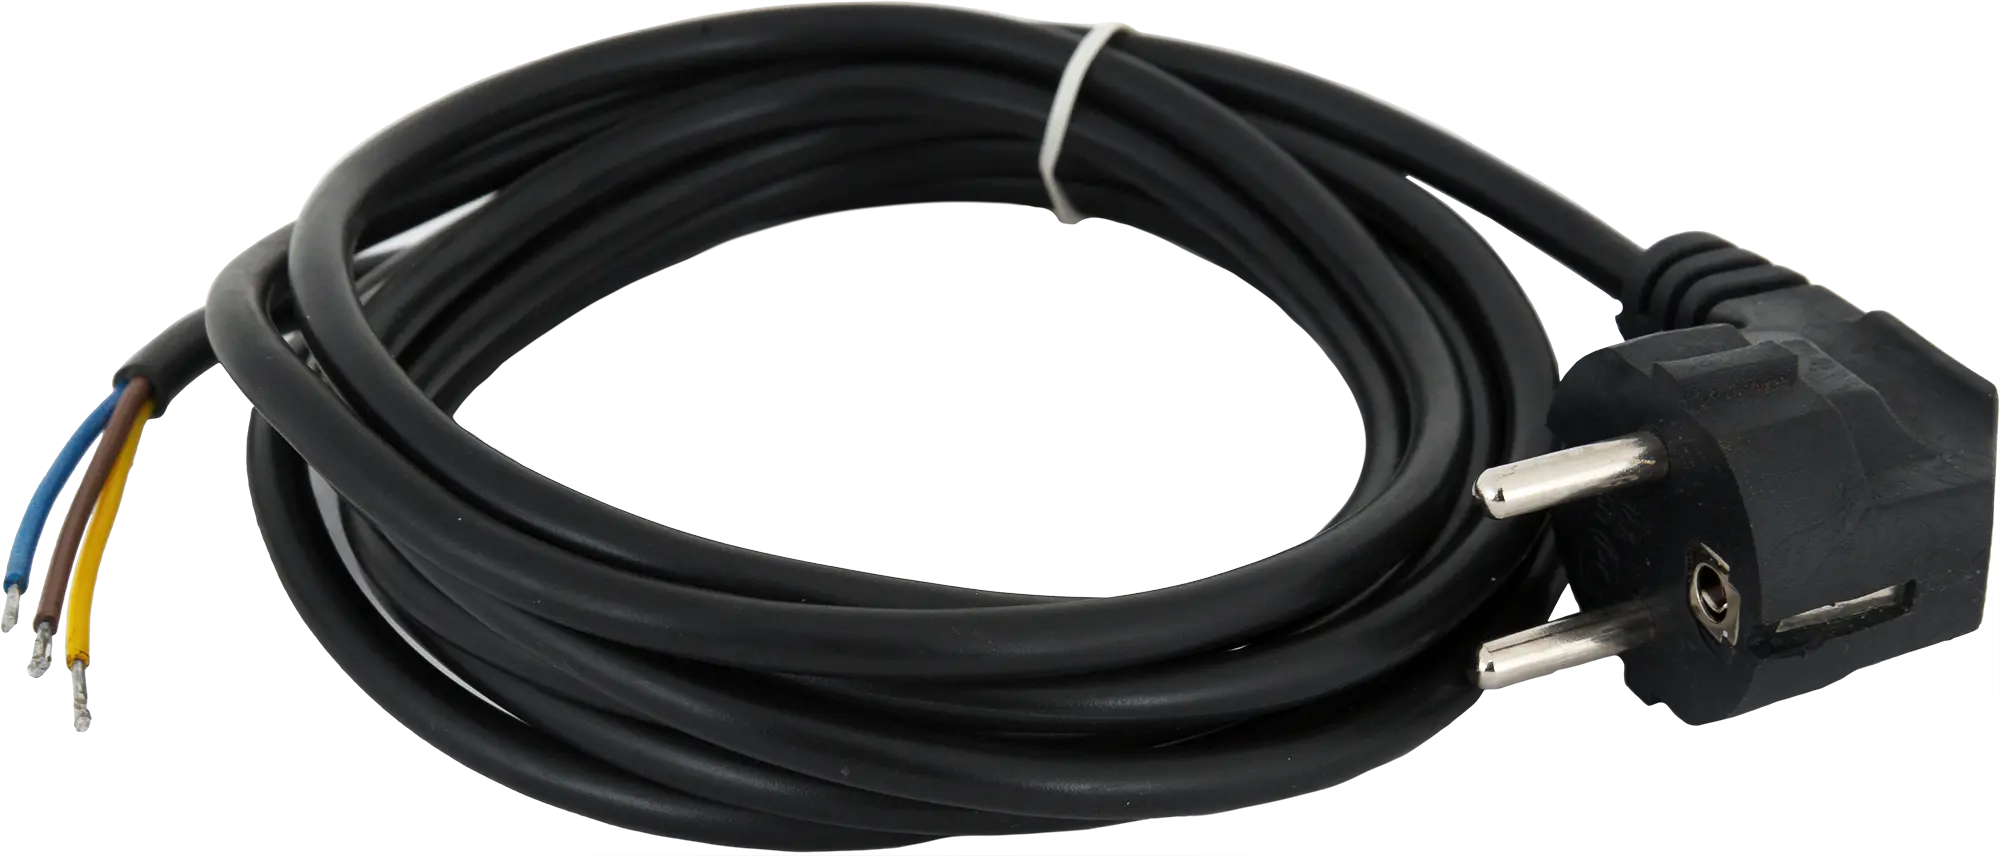 Шнур сетевой с заземлением 10 A 3 м цвет чёрный шнур сетевой с заземлением 16 a 1 5 м чёрный